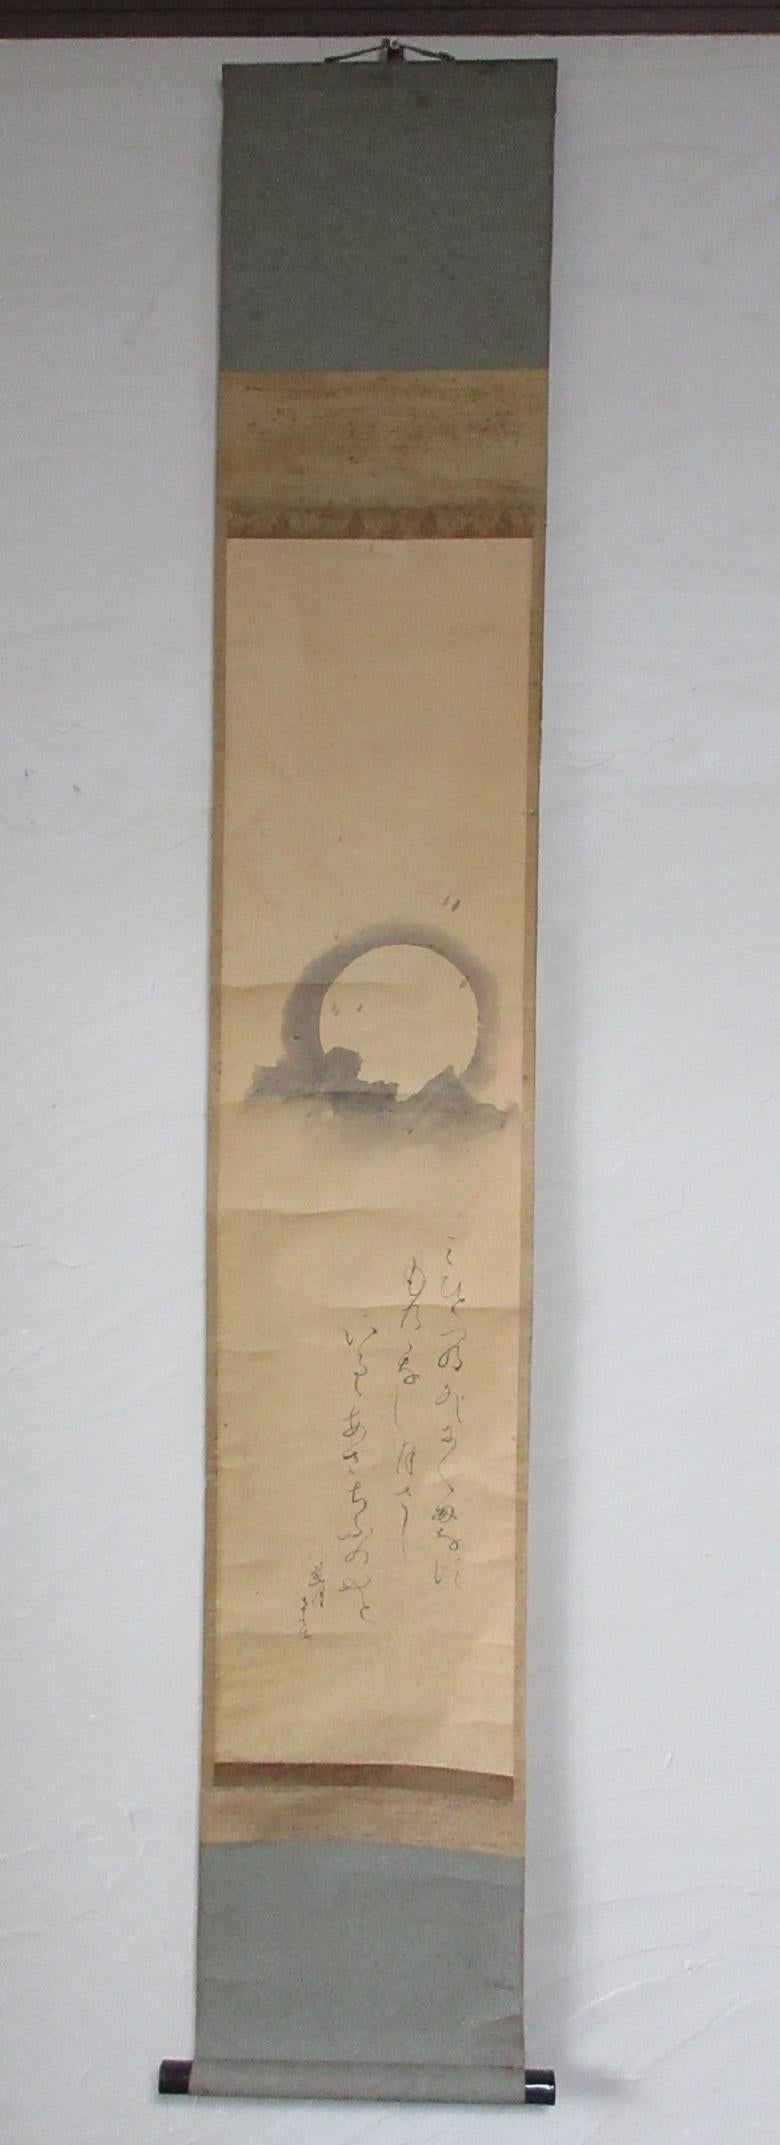 Japan, eine seltene Papierrolle, handgemalt von dem bekannten Rengetsu Otagaki (1791-1875).  Sie war eine sehr berühmte Nonne im alten Japan, und da sie mit Poesie vertraut war, sind ihre Waka-Gedichte auf Papier und vor allem ihre schwer zu